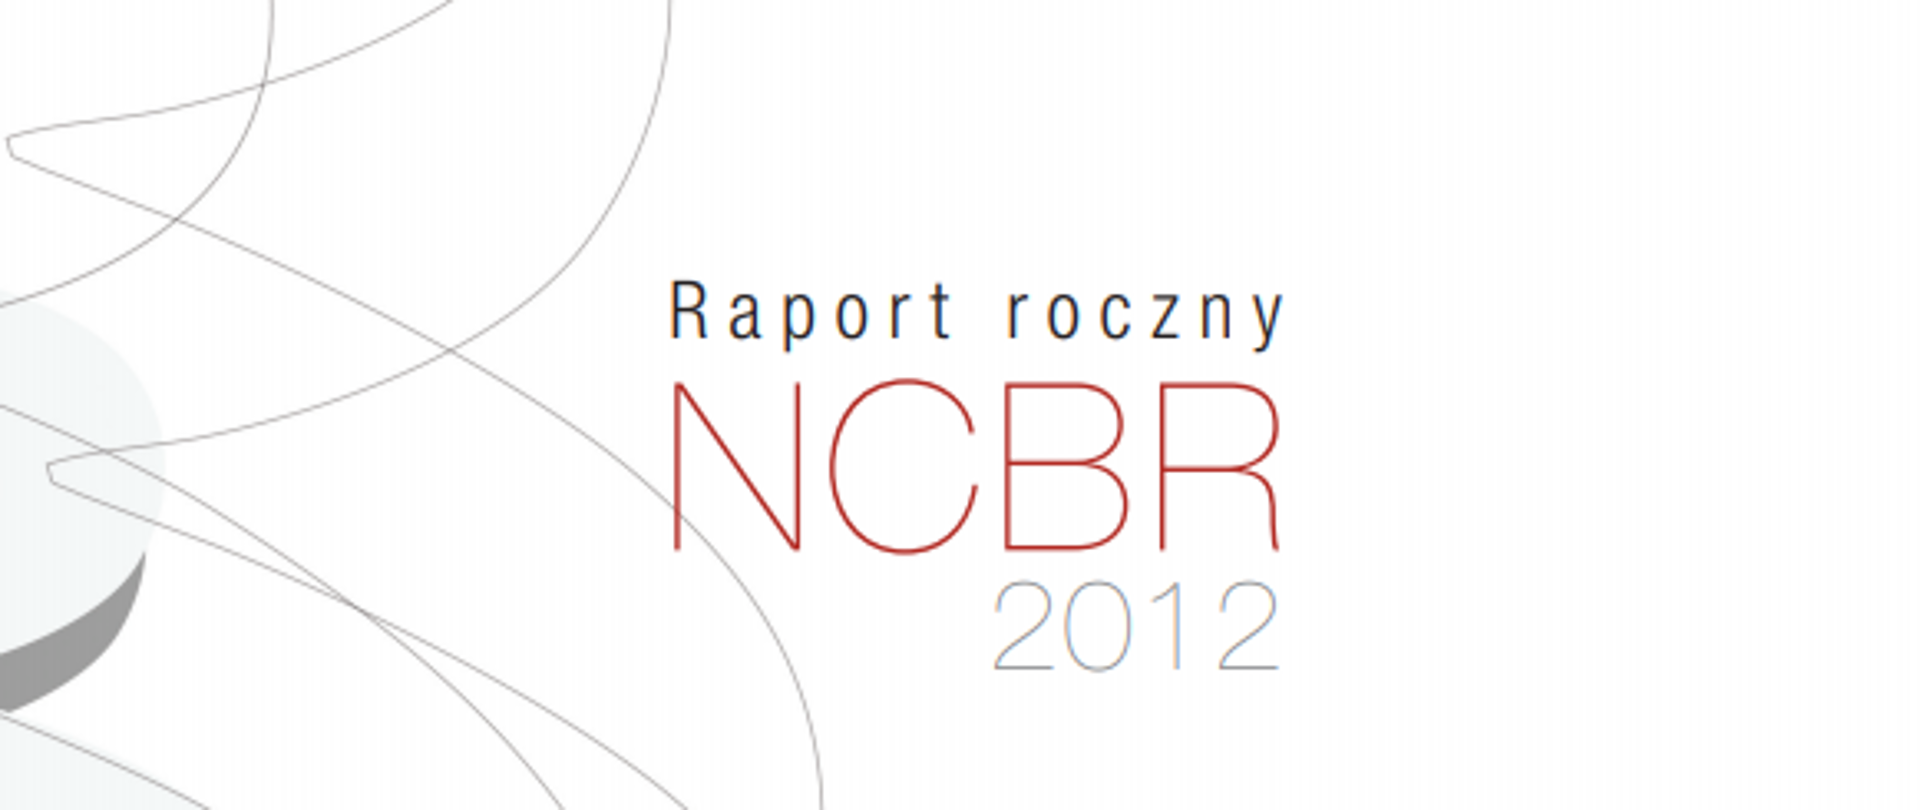 Napis Raport Roczny NCBR 2012 na białym tle, po lewo szare linie